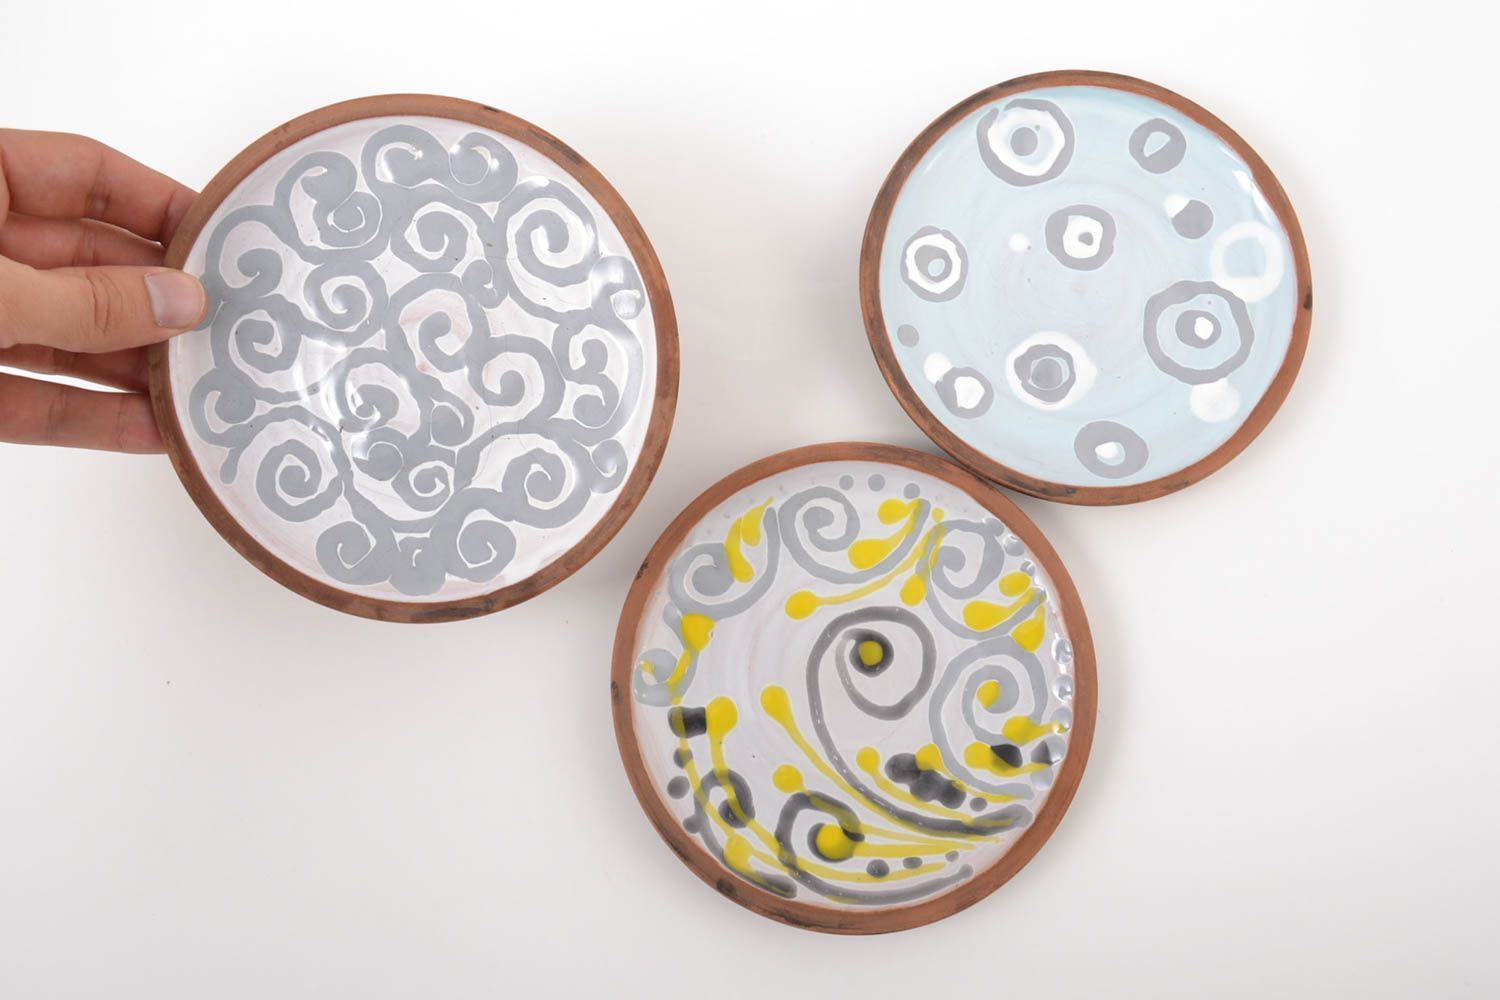 Handmade ceramic plate 3 pieces ceramic kitchenware kitchen supplies gift ideas photo 2